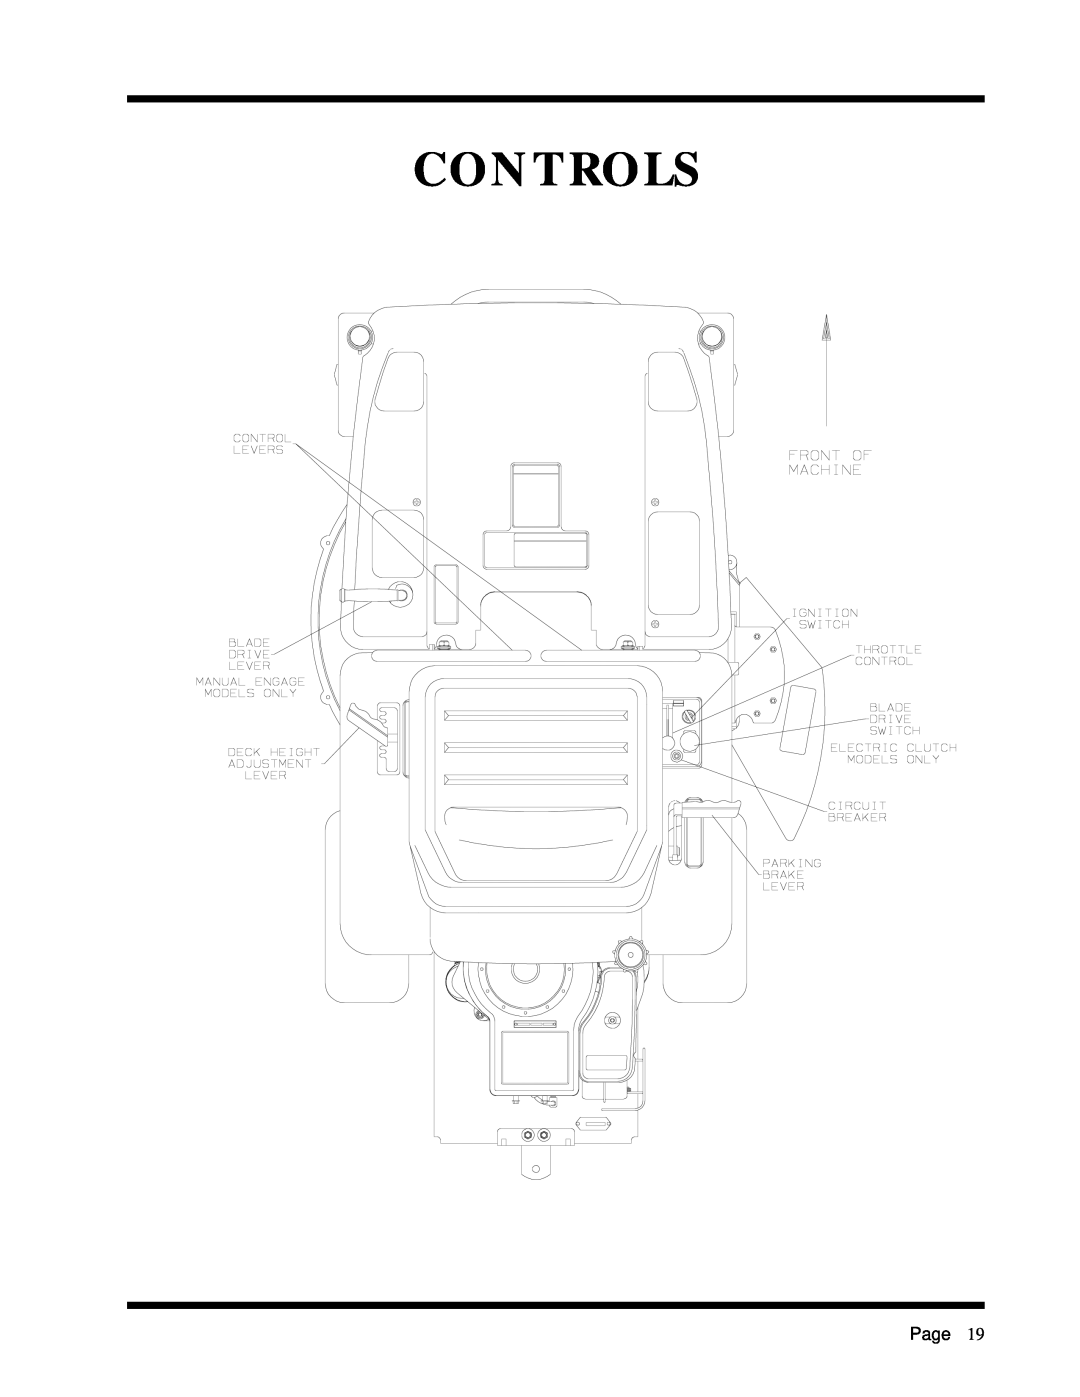 Dixon ZTR 2301 manual Controls, Page 